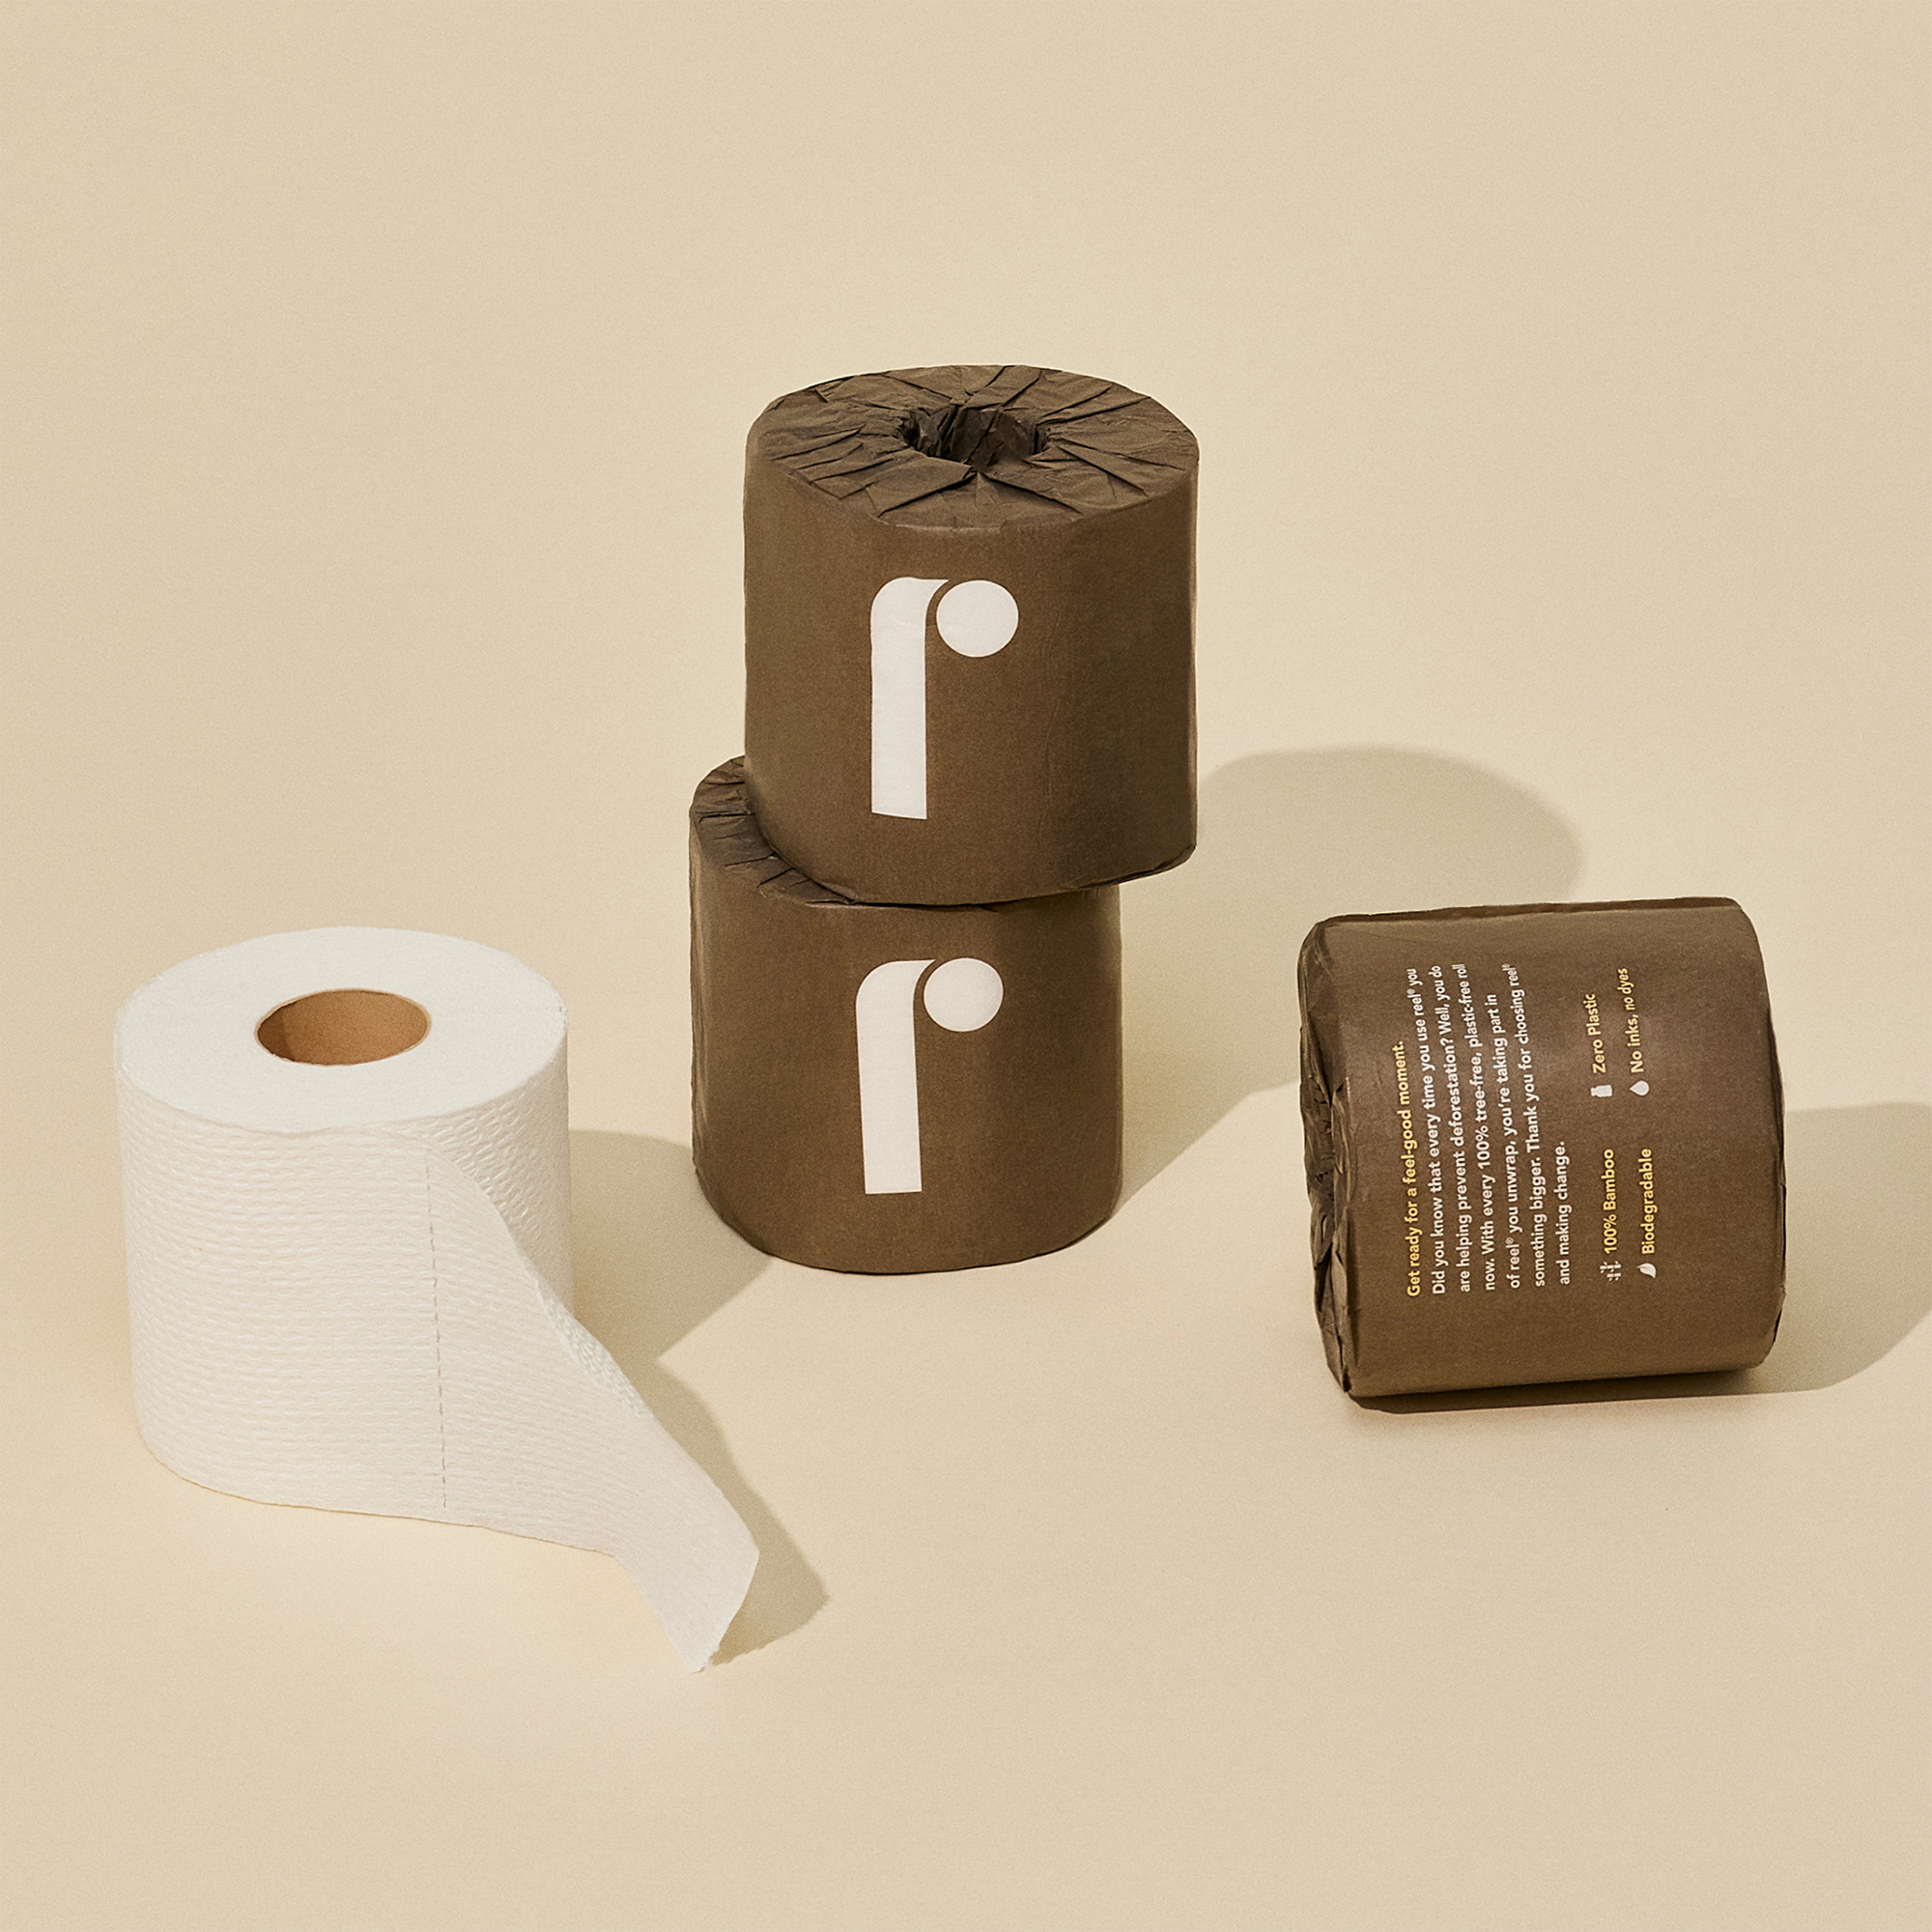  Reel Toilet Paper 12 Pack